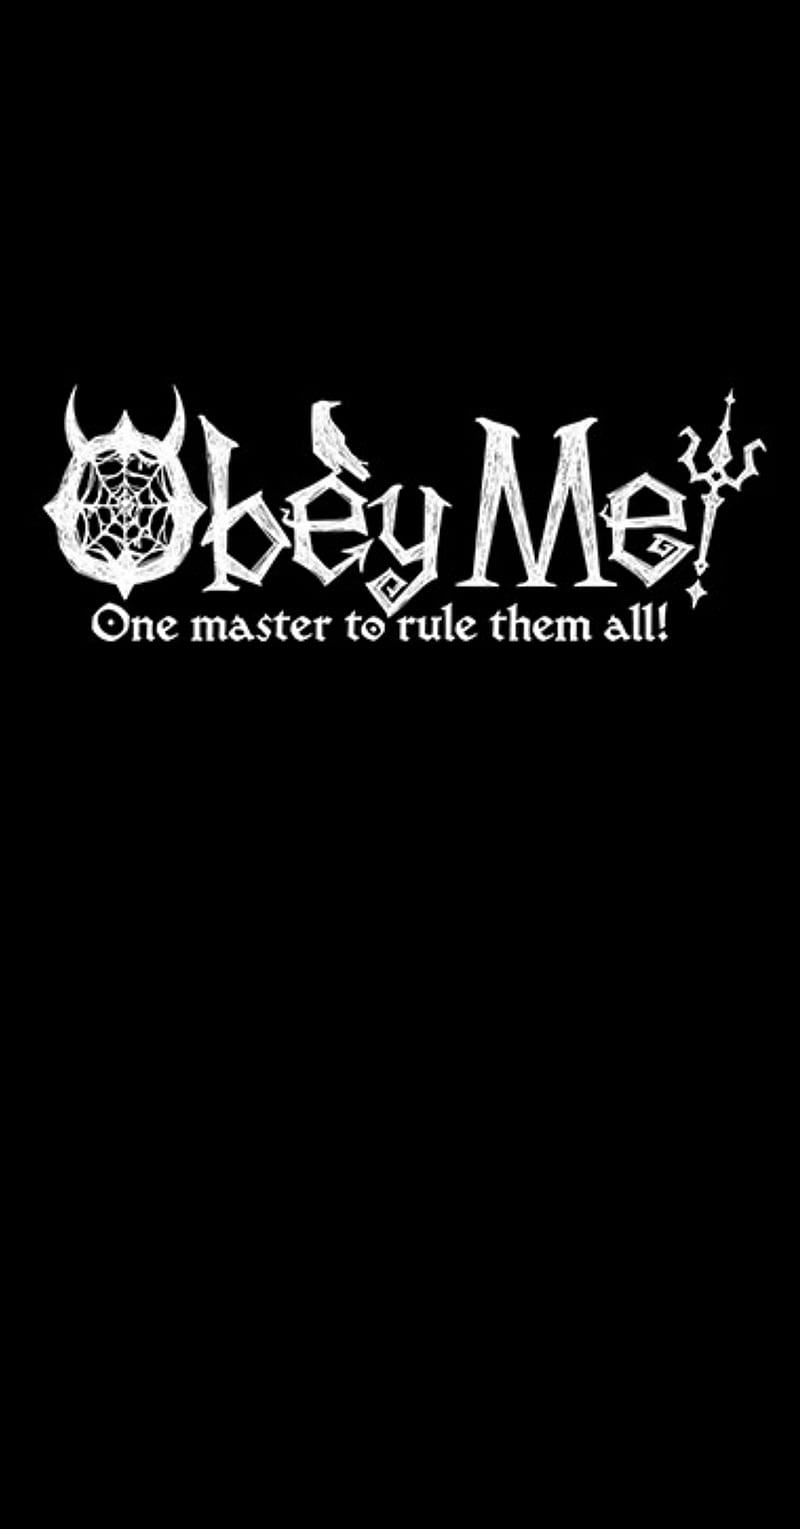 Obey me, logo, HD phone wallpaper